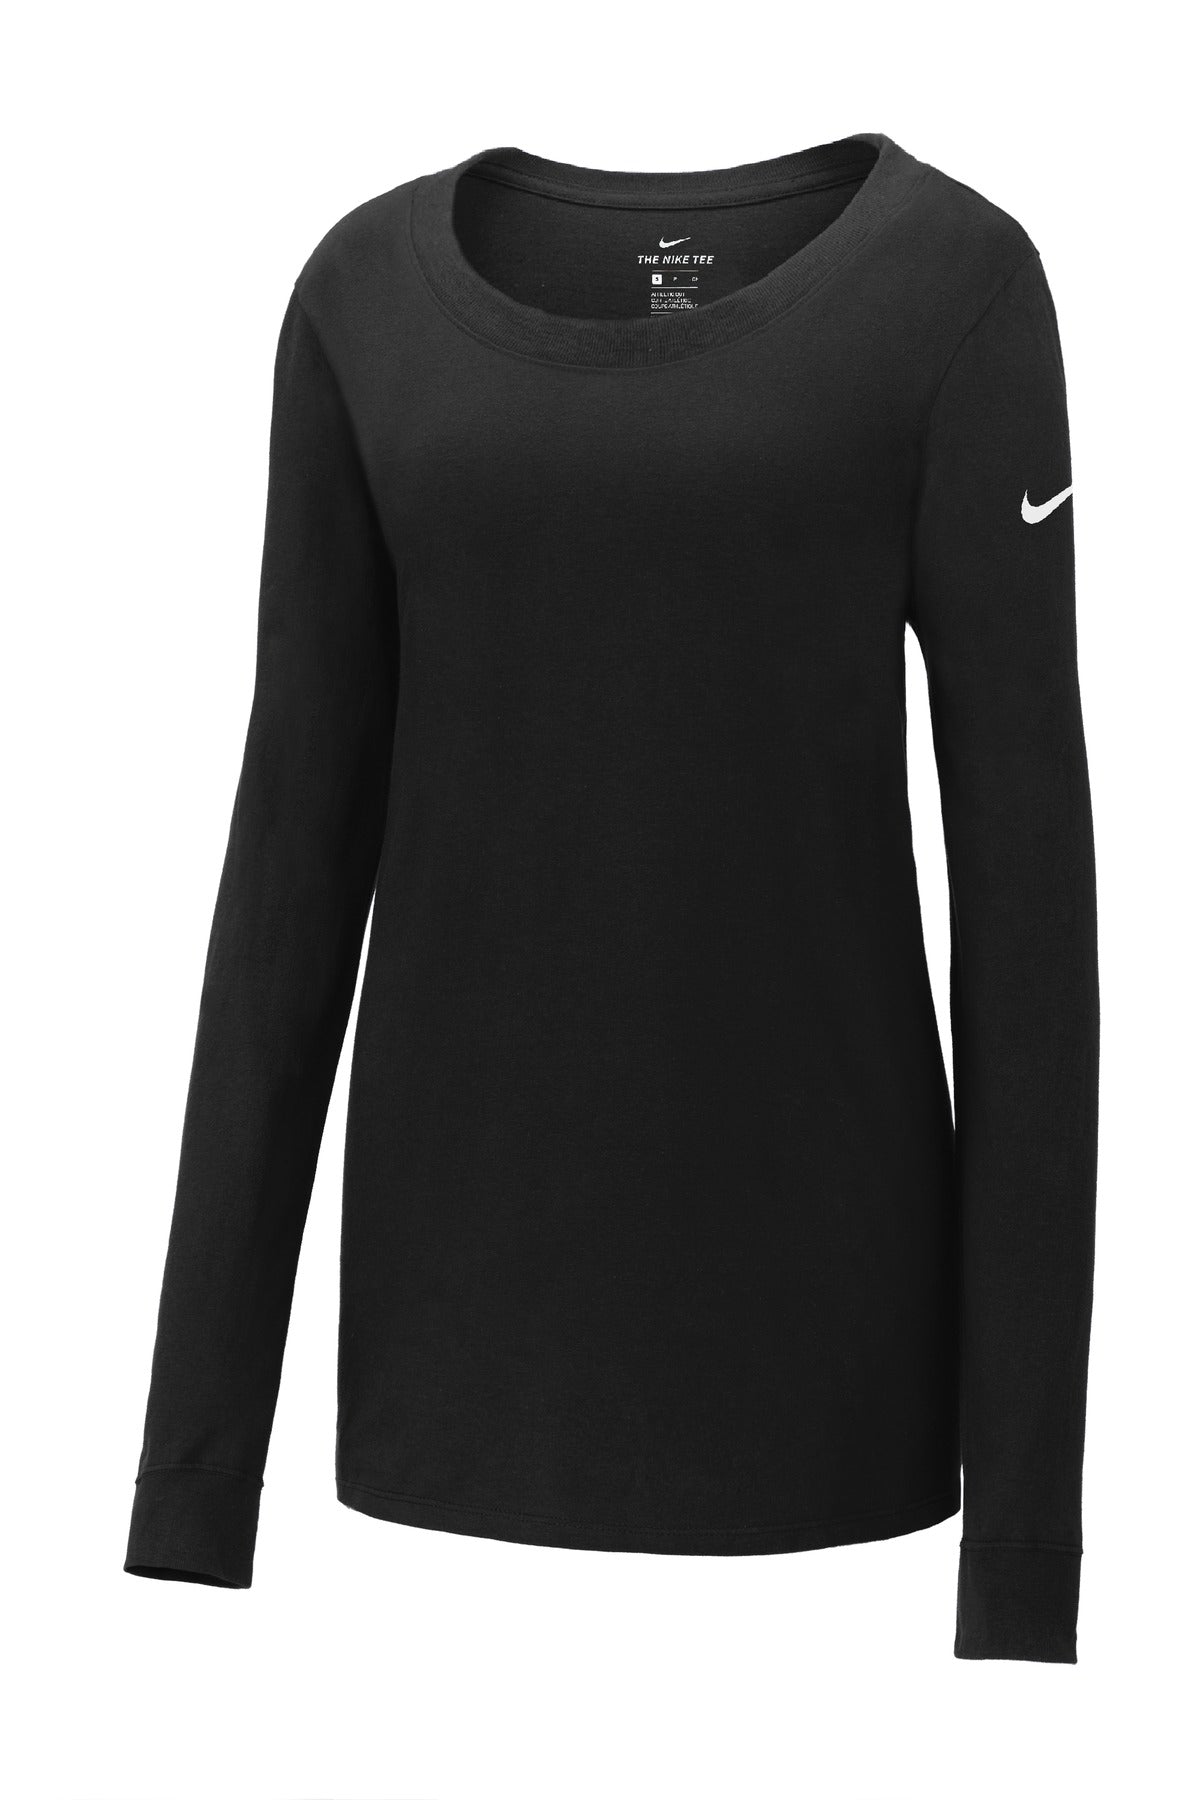 Nike Ladies Core Cotton Long Sleeve Scoop Neck Tee. NKBQ5235